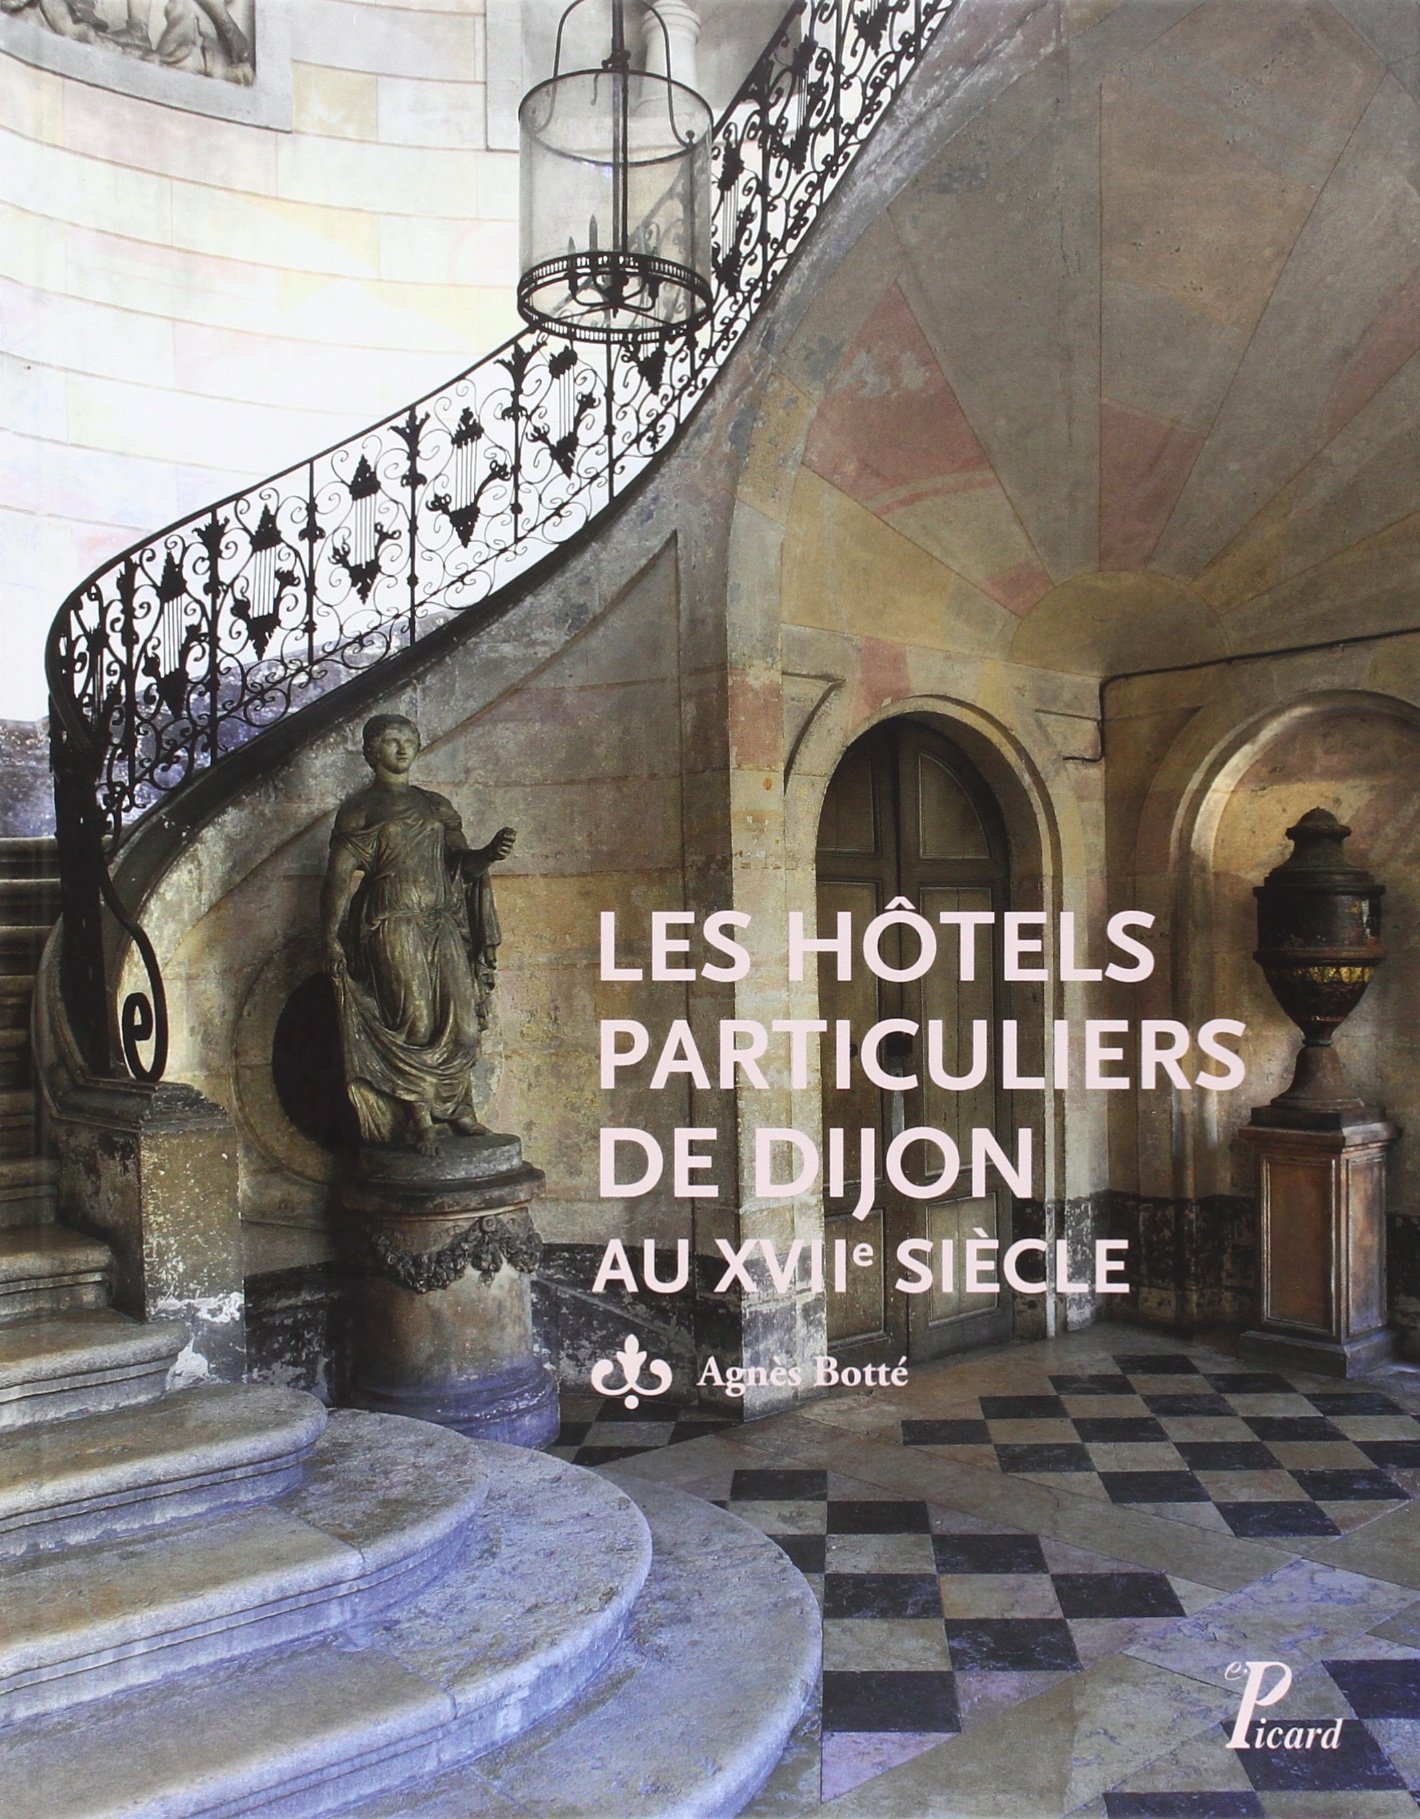 ÉPUISÉ - Les hôtels particuliers de Dijon au XVIIe siècle, 2015, 352 p.